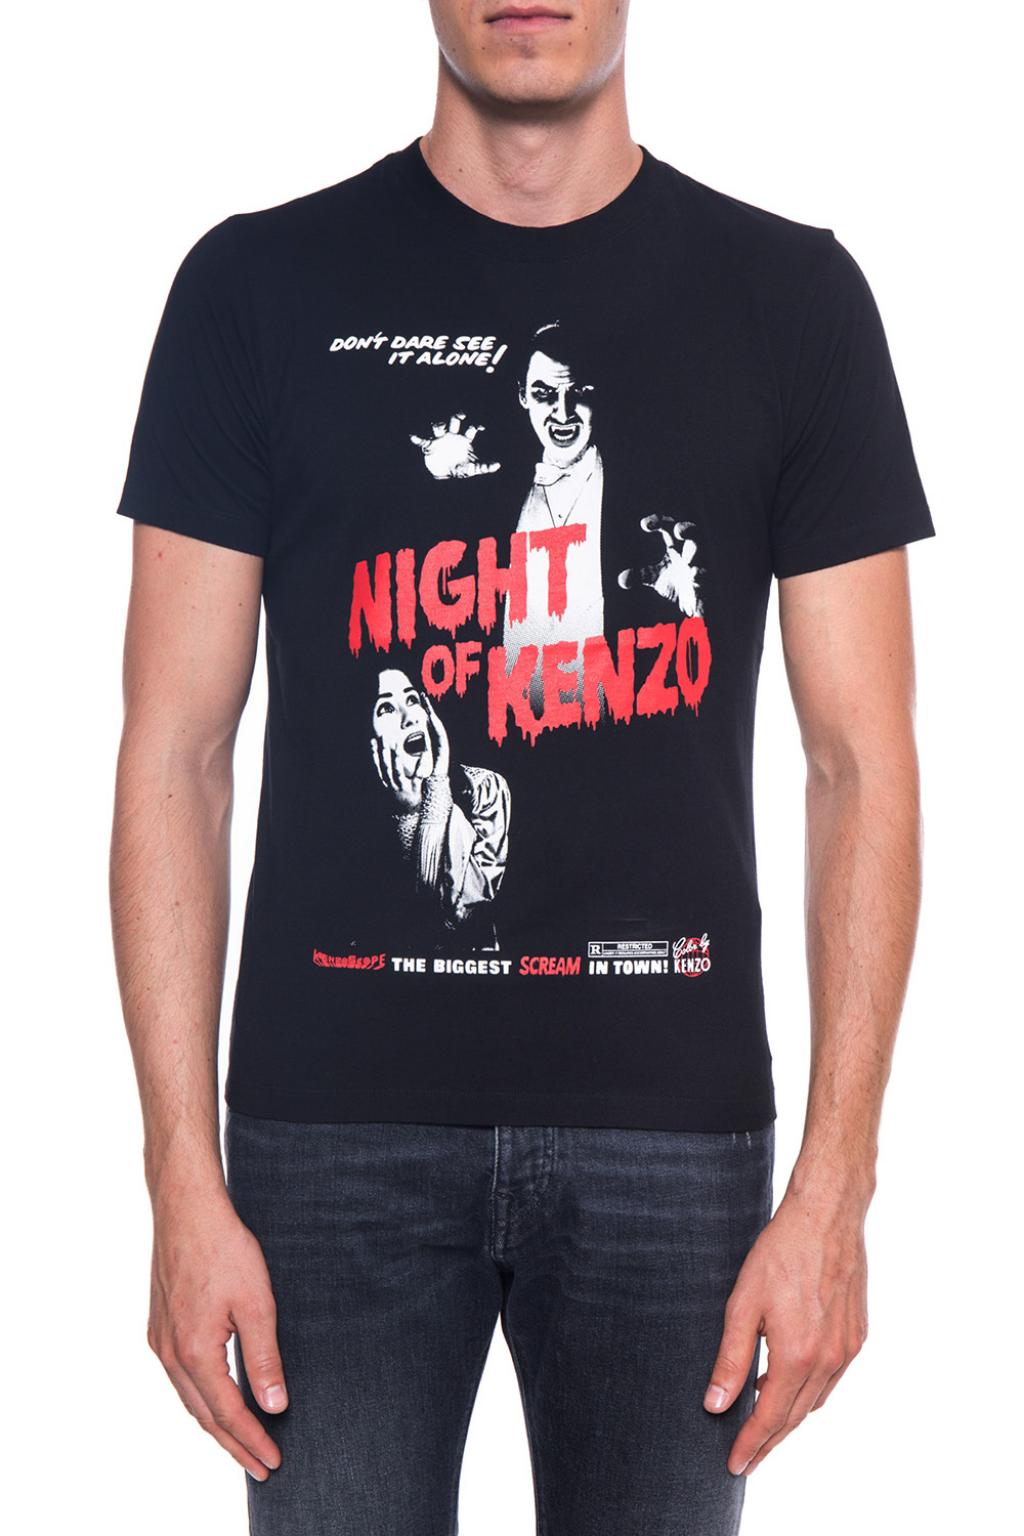 night of kenzo t shirt